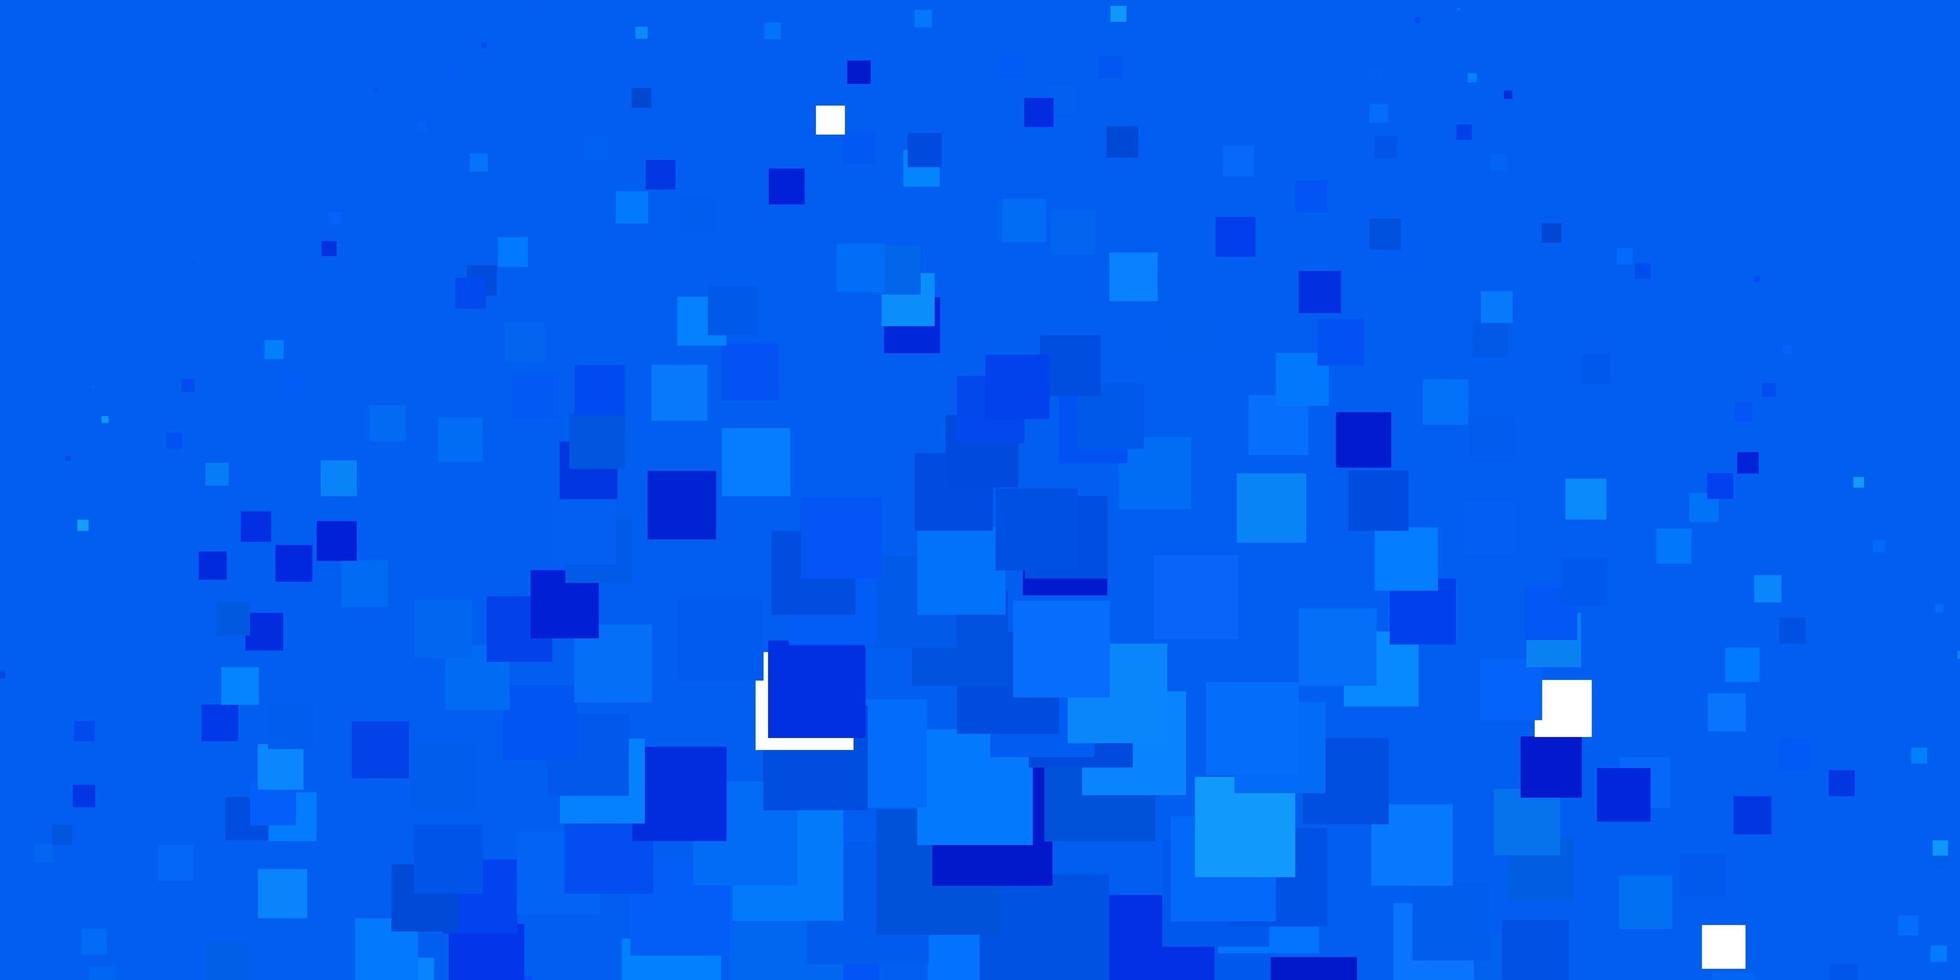 modèle vectoriel bleu clair dans un style carré